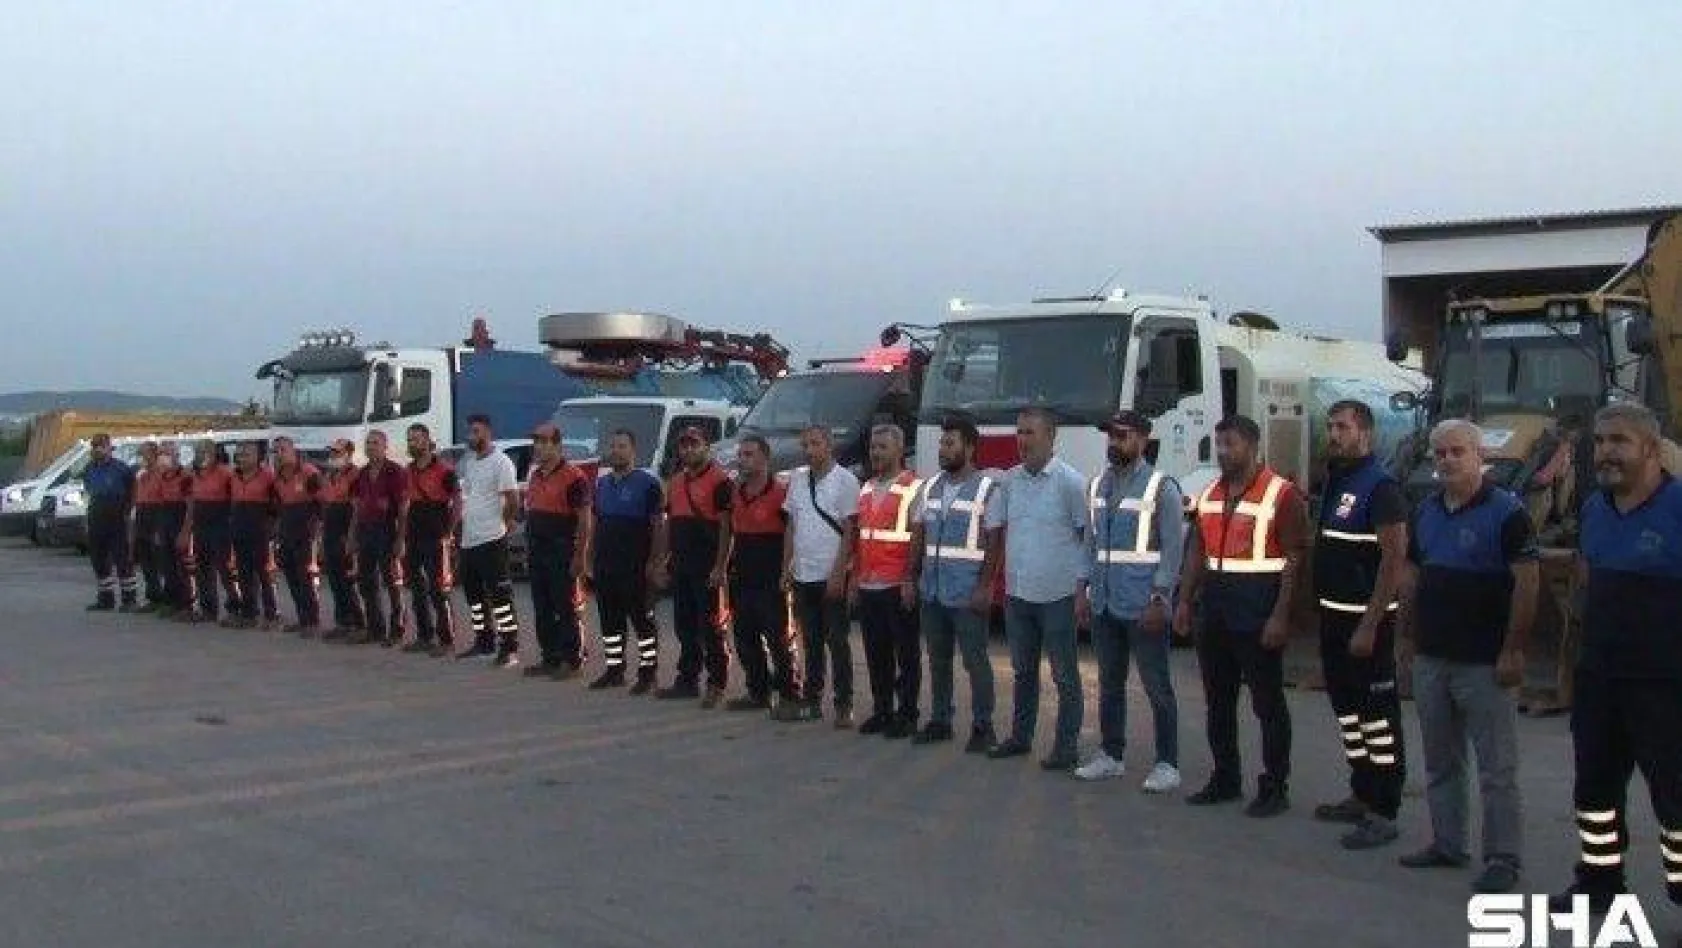 Antalya'daki yangını söndürme çalışmalarına destek için 3 arazöz ve uzman ekipler Pendik'ten yola çıktı